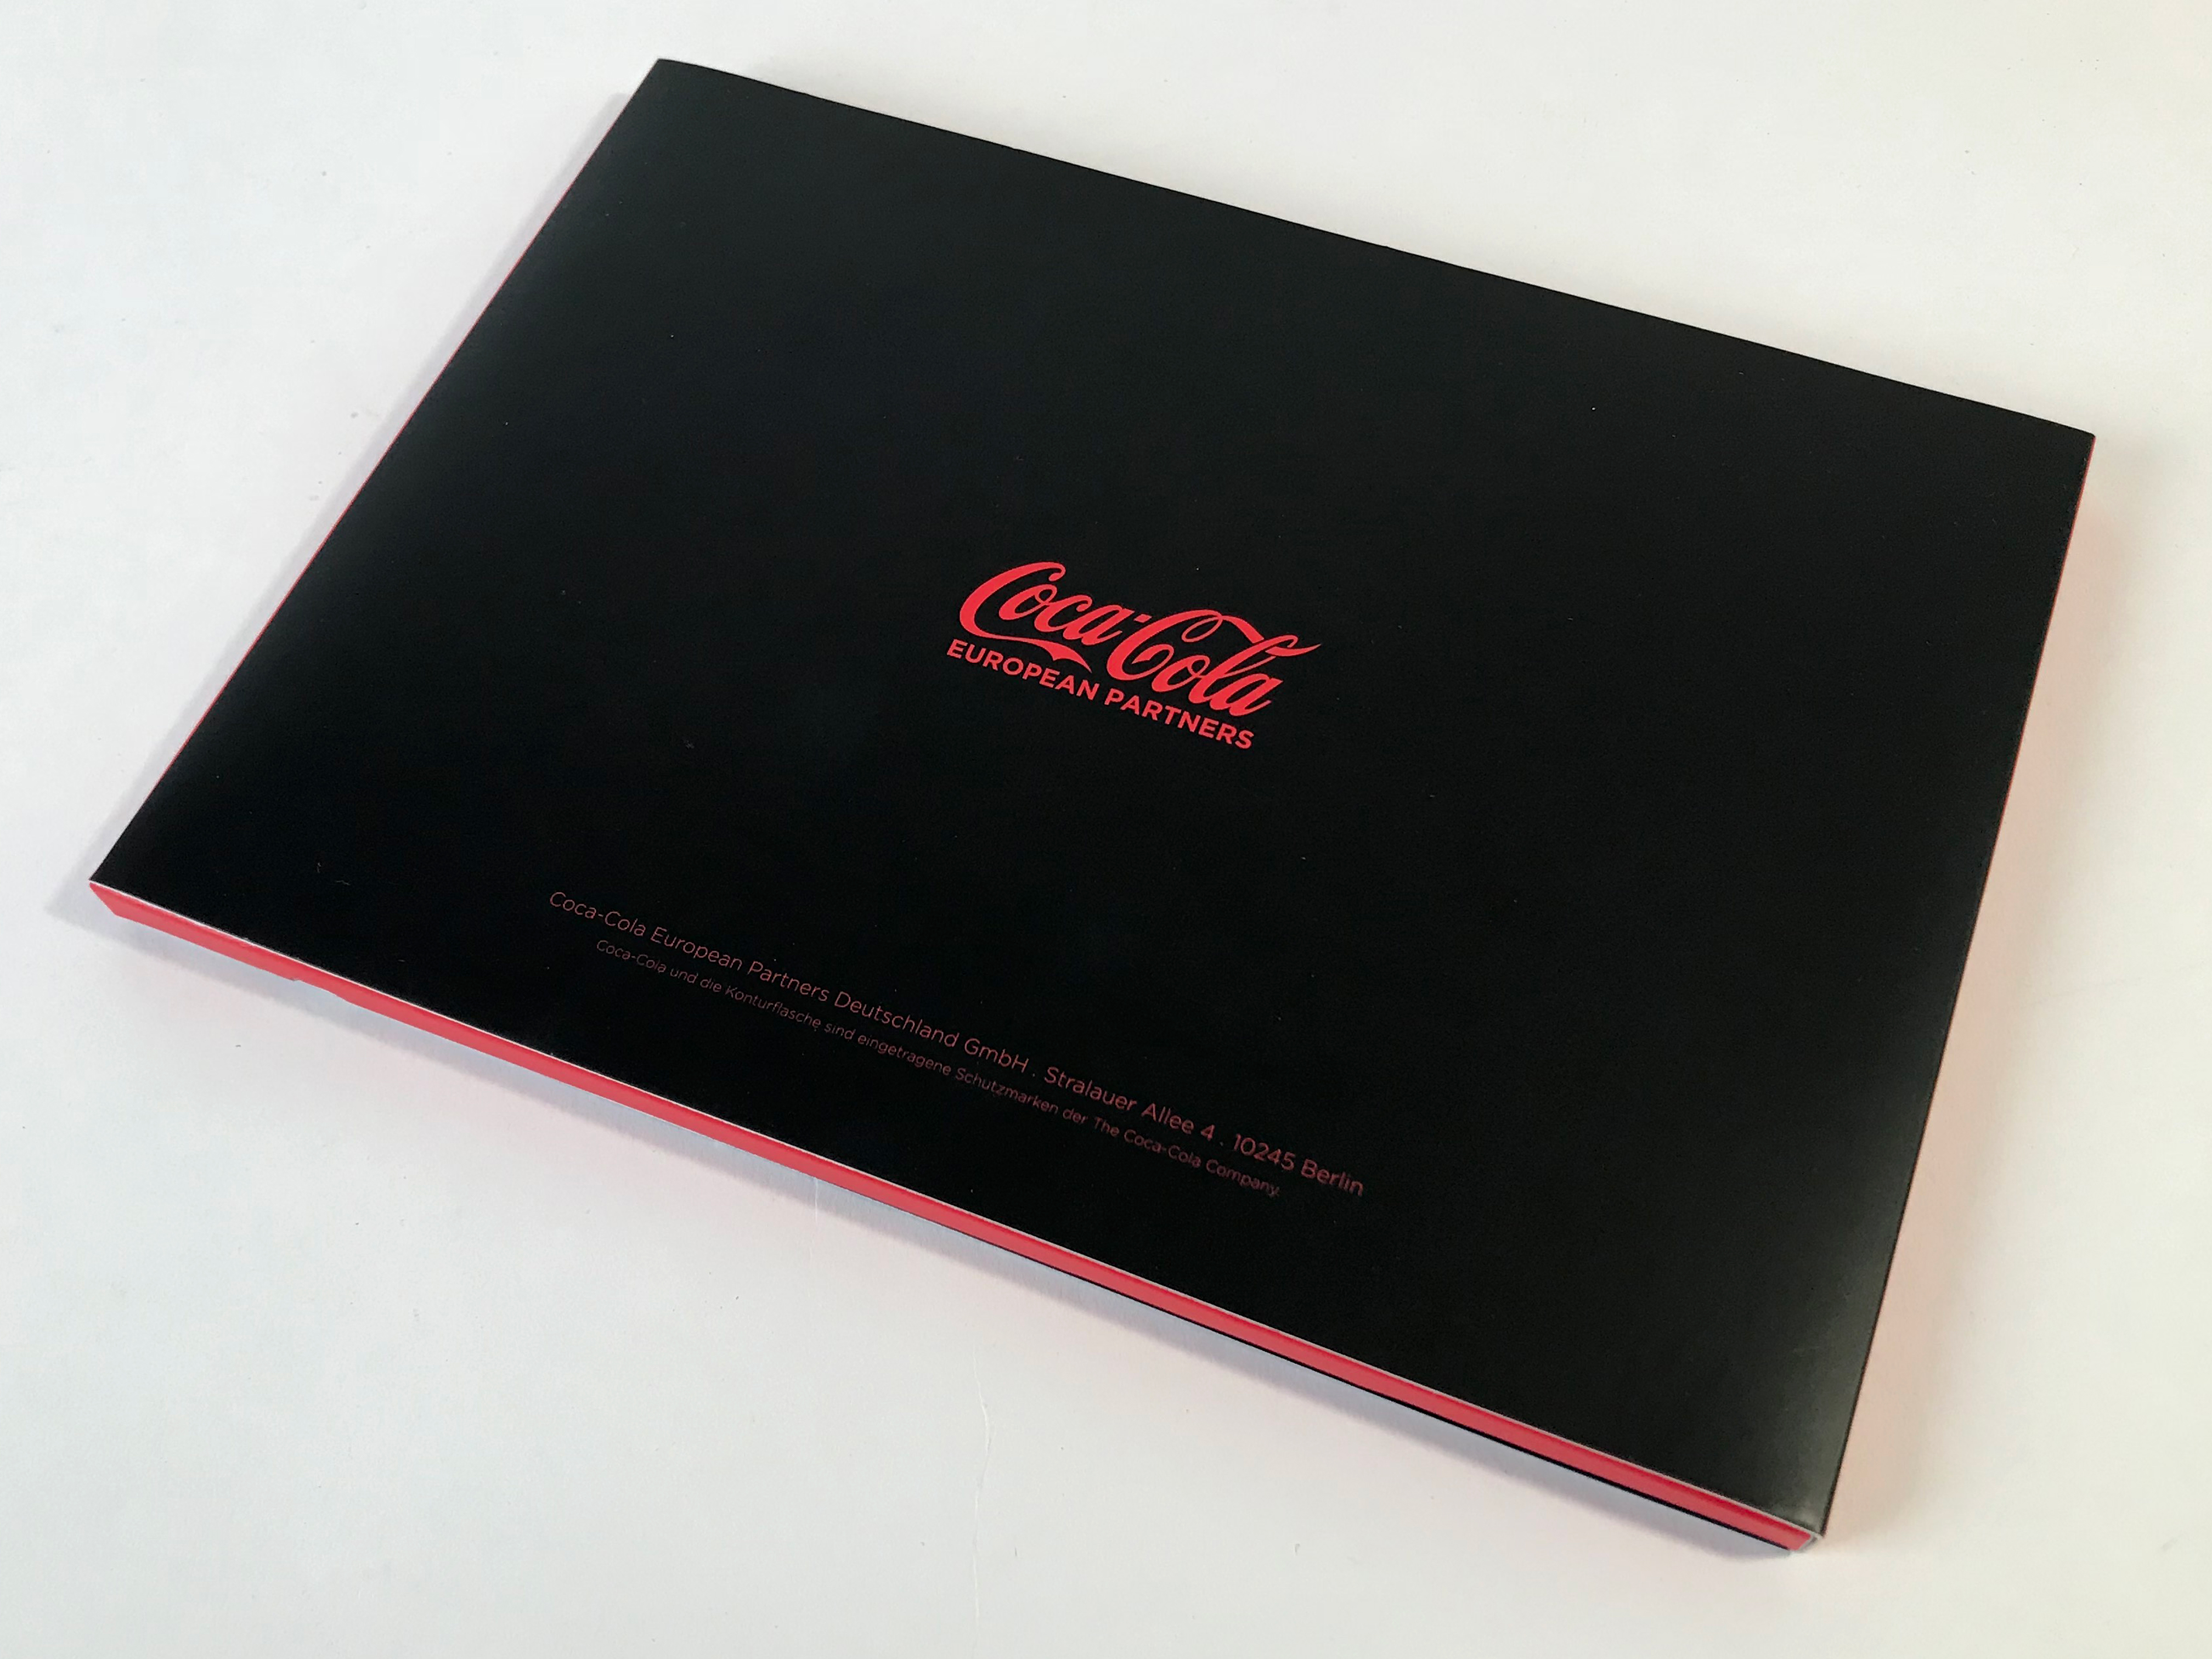 Diecut Coke video book back cover